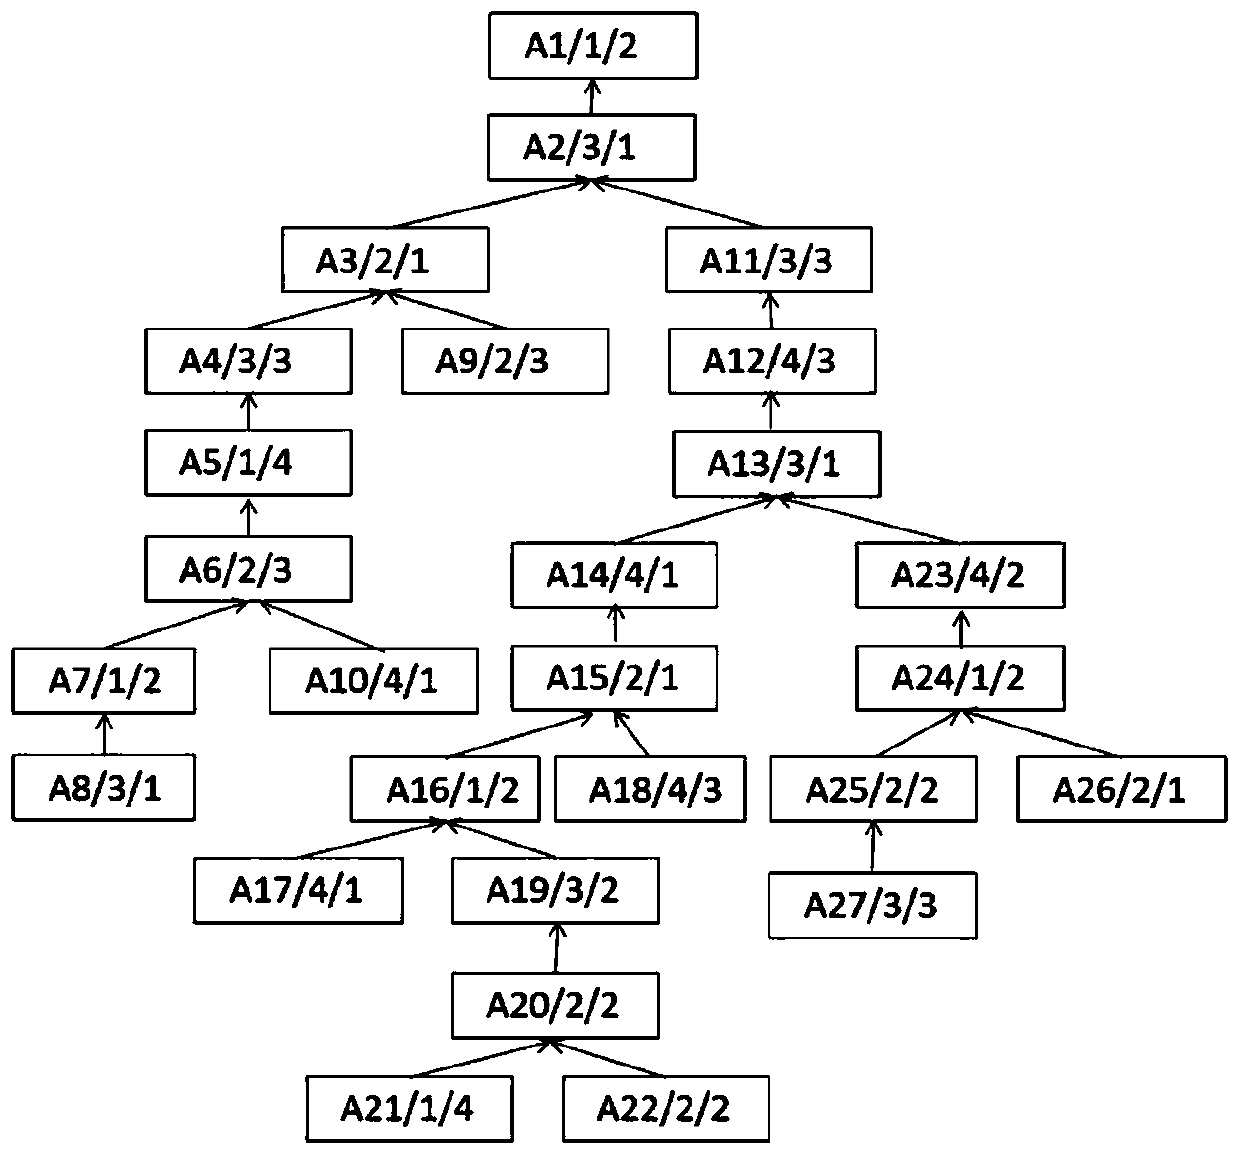 Comprehensive scheduling method based on Dijkstra algorithm